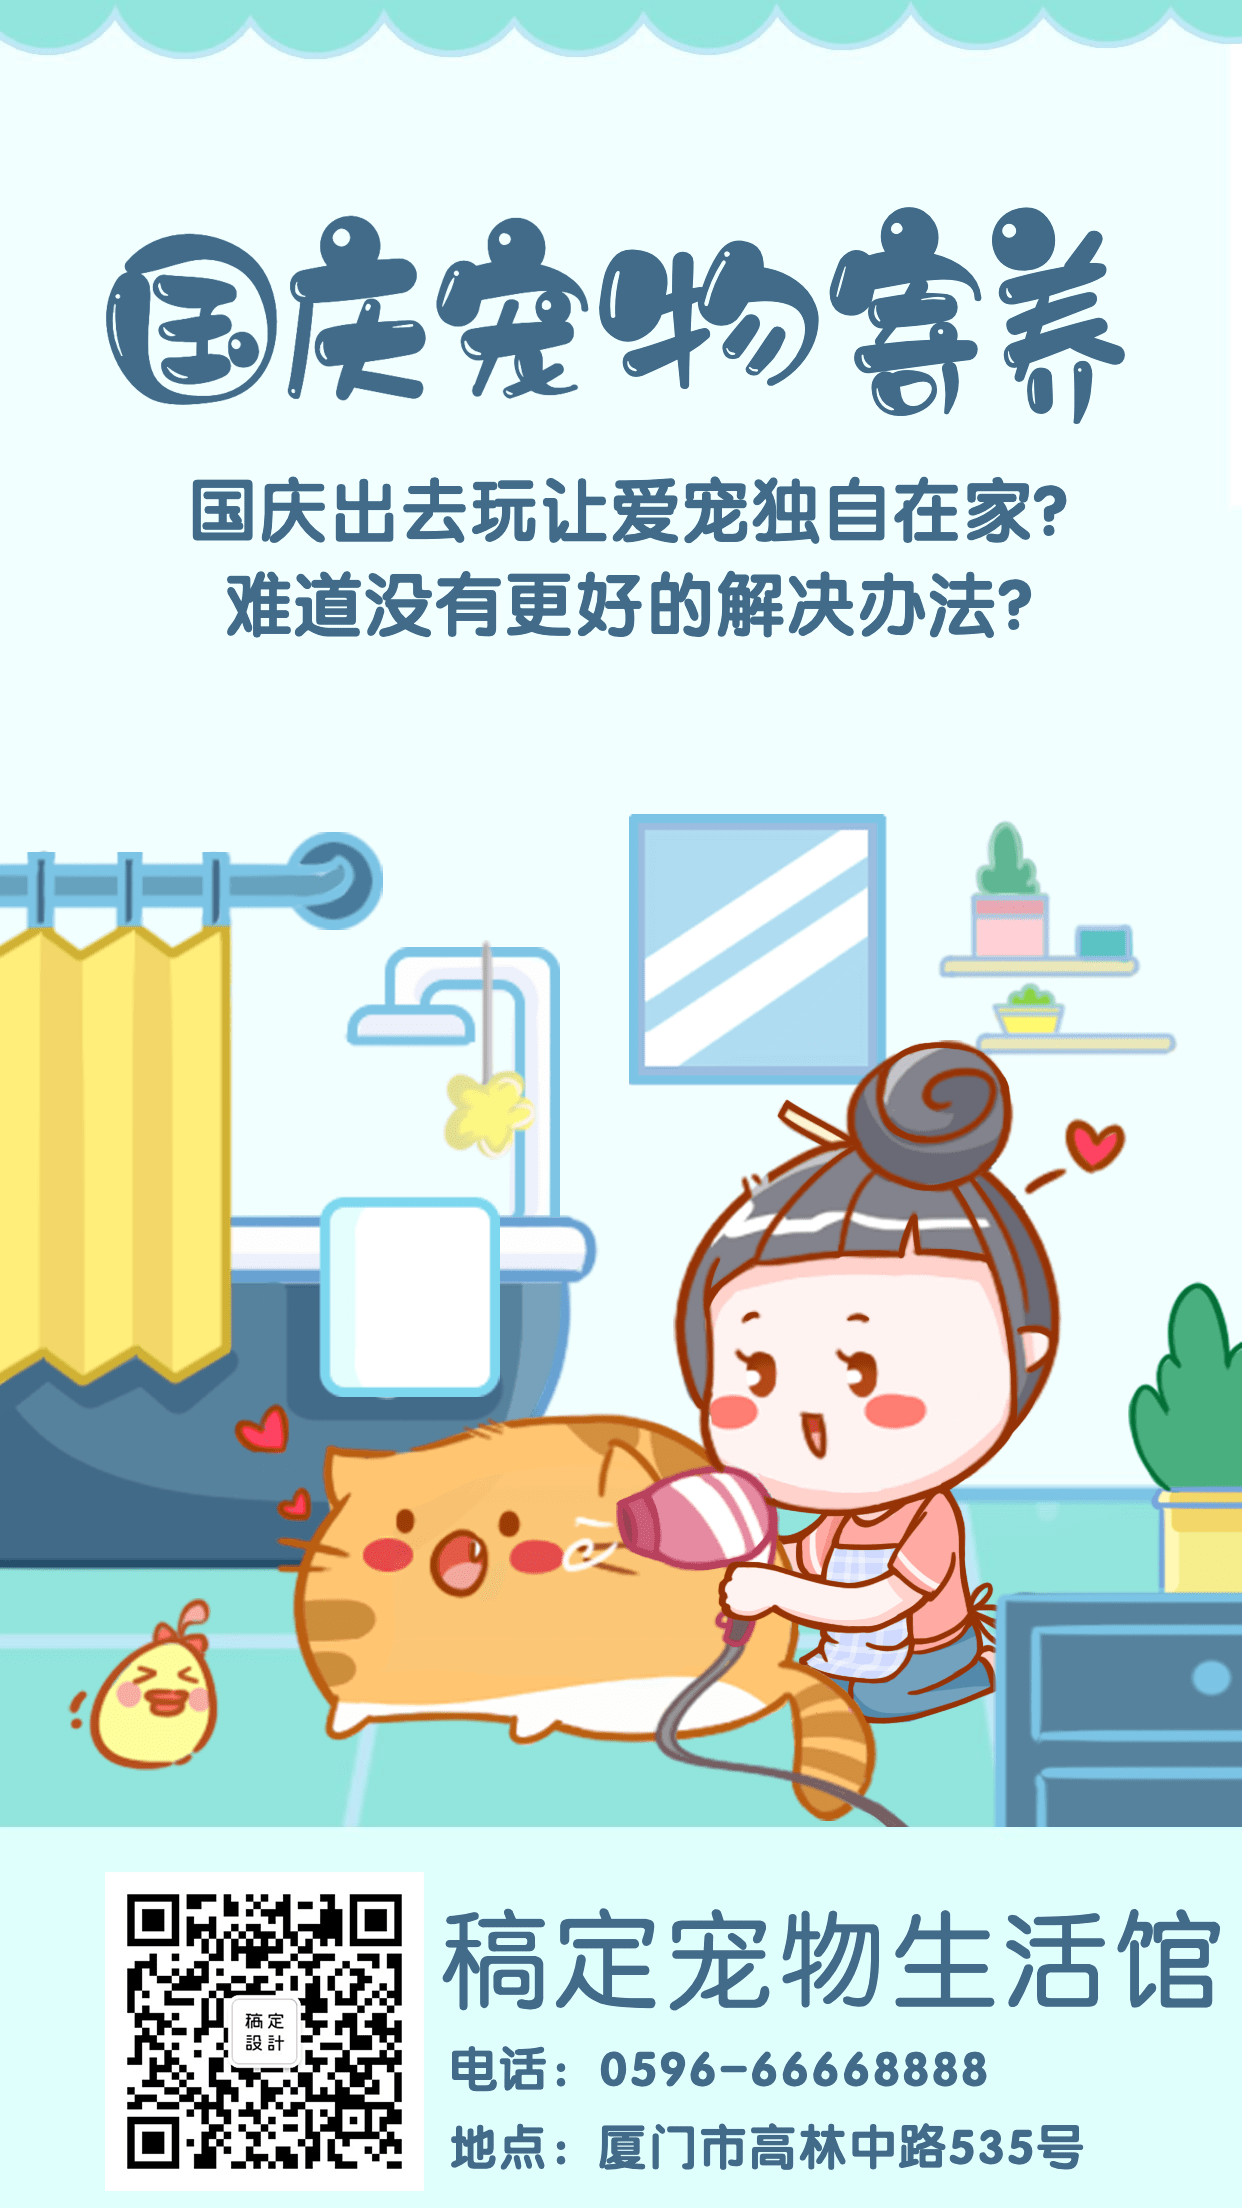 国庆宠物寄养节假日活动促销宣传手机海报预览效果